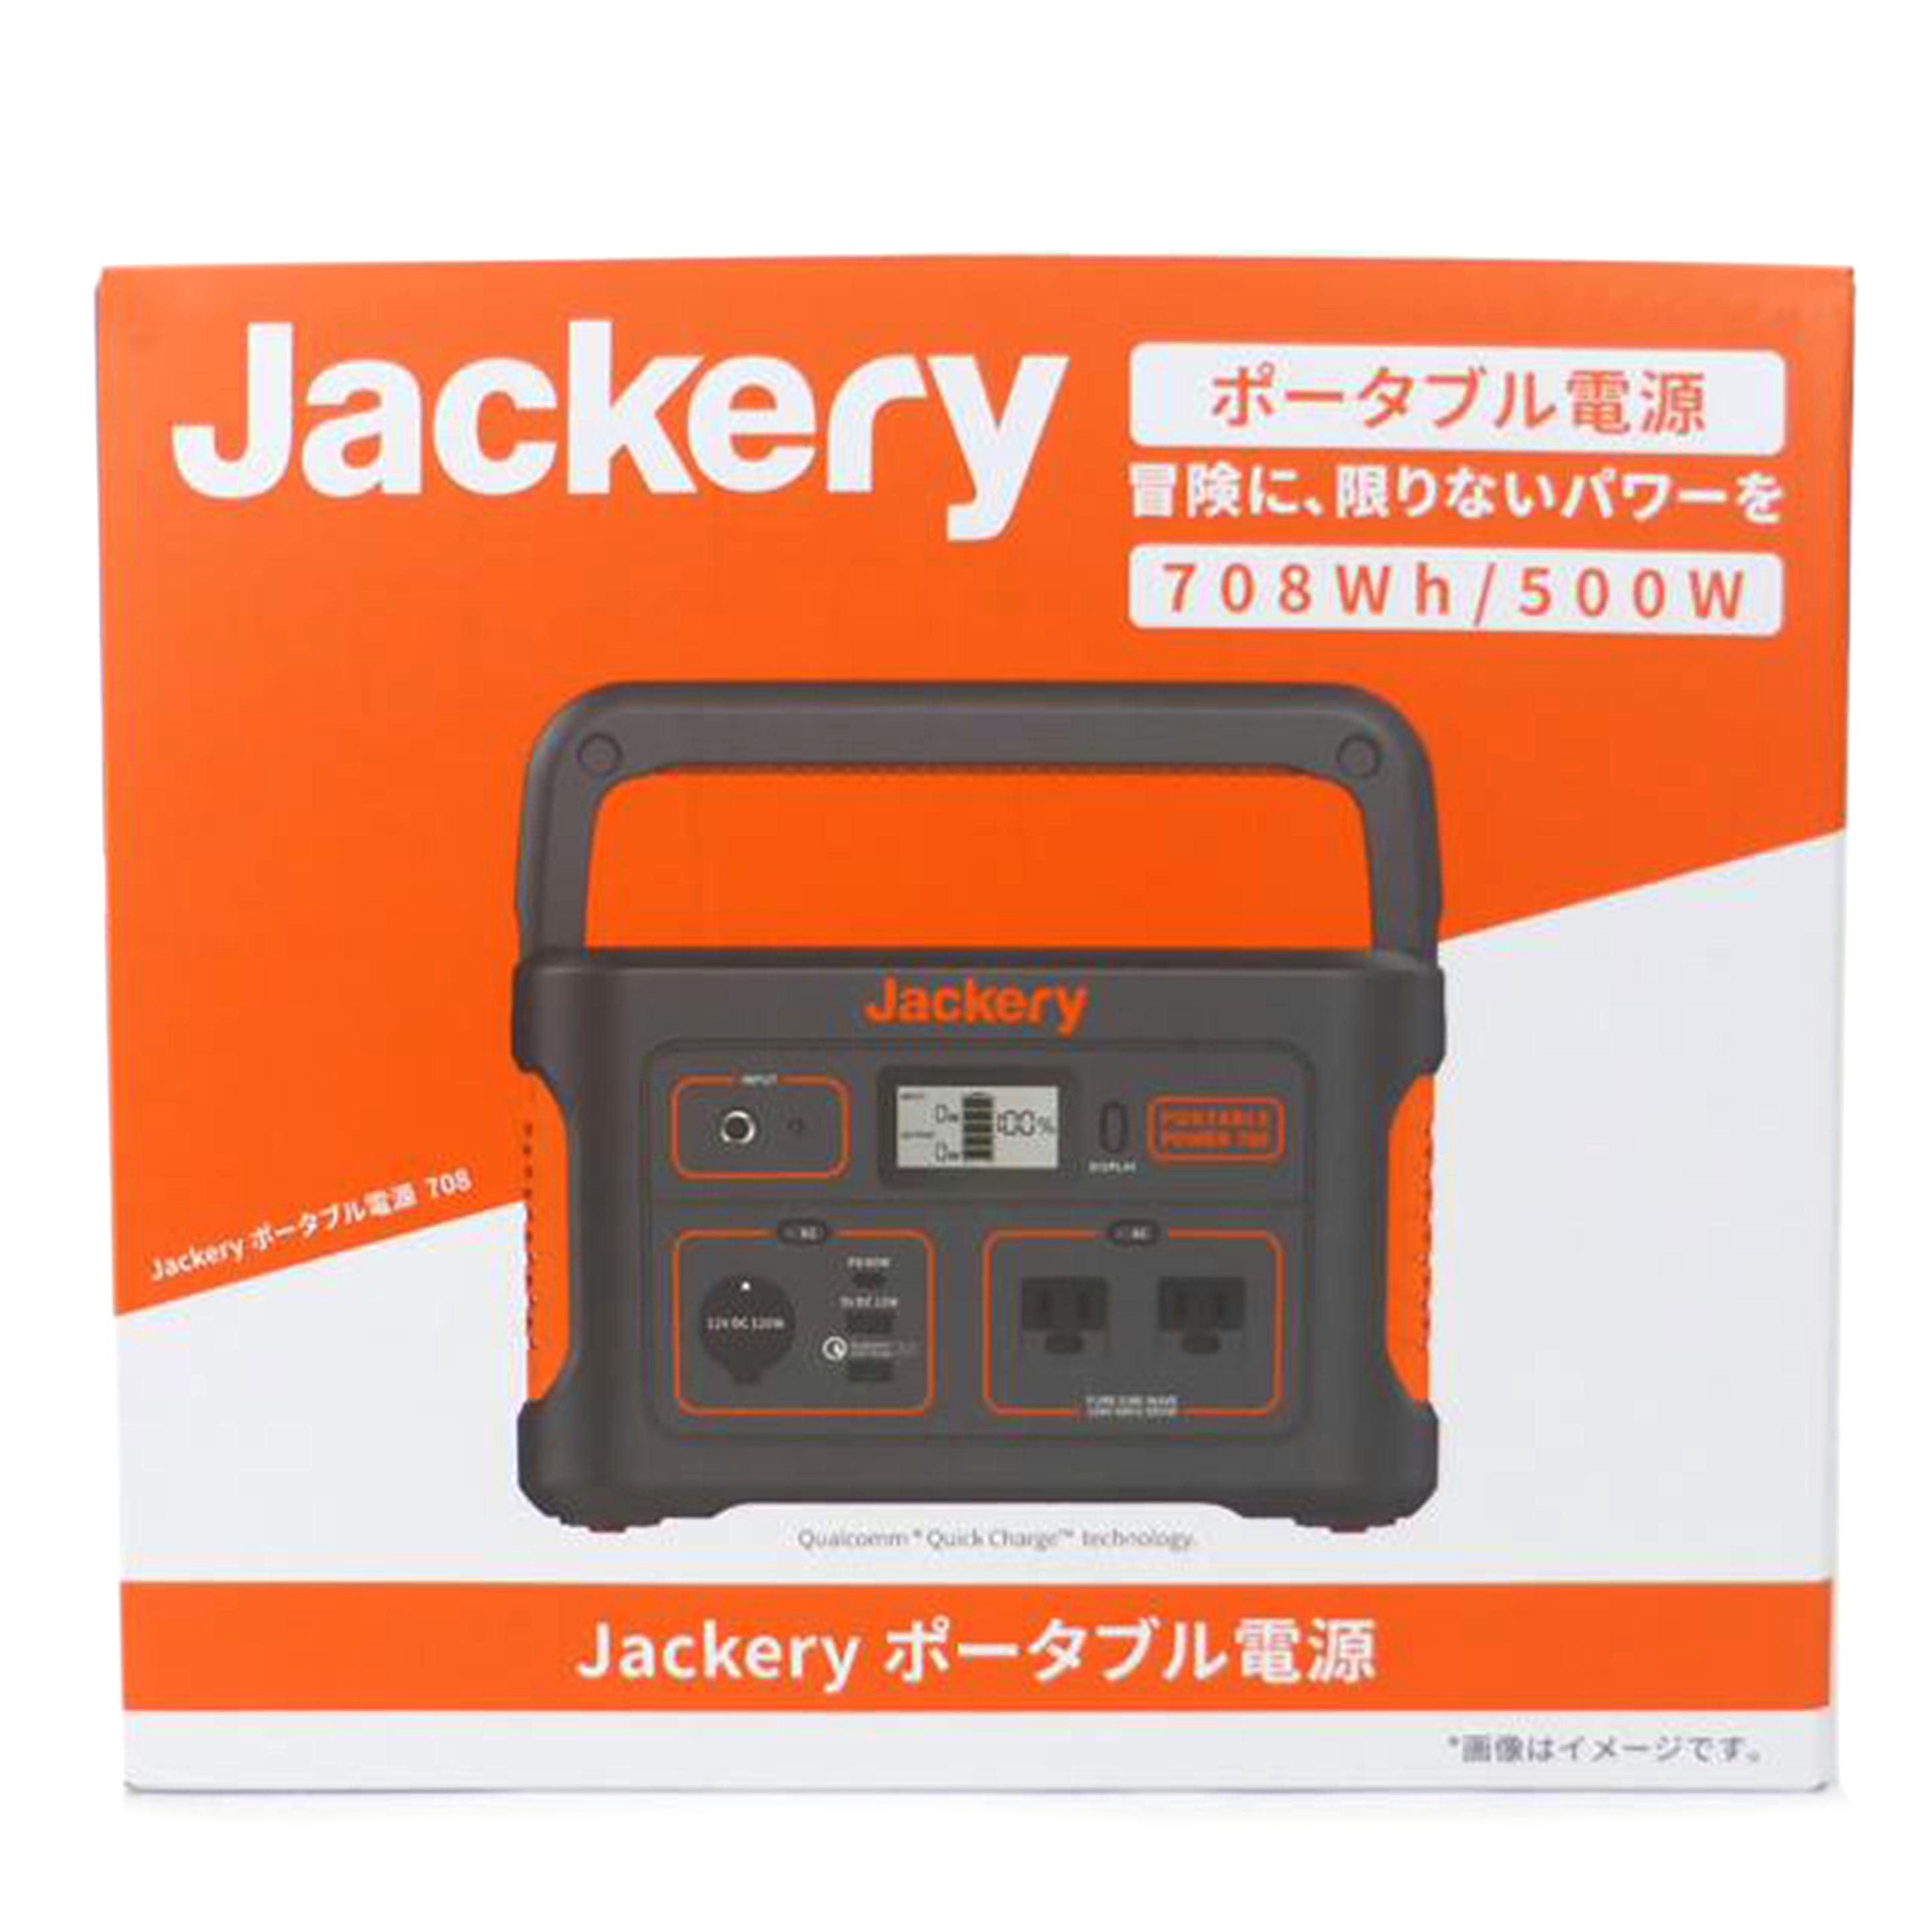 Jackery ジャクリ/家電・カメラ・AV機器|REXT ONLINE 公式通販サイト